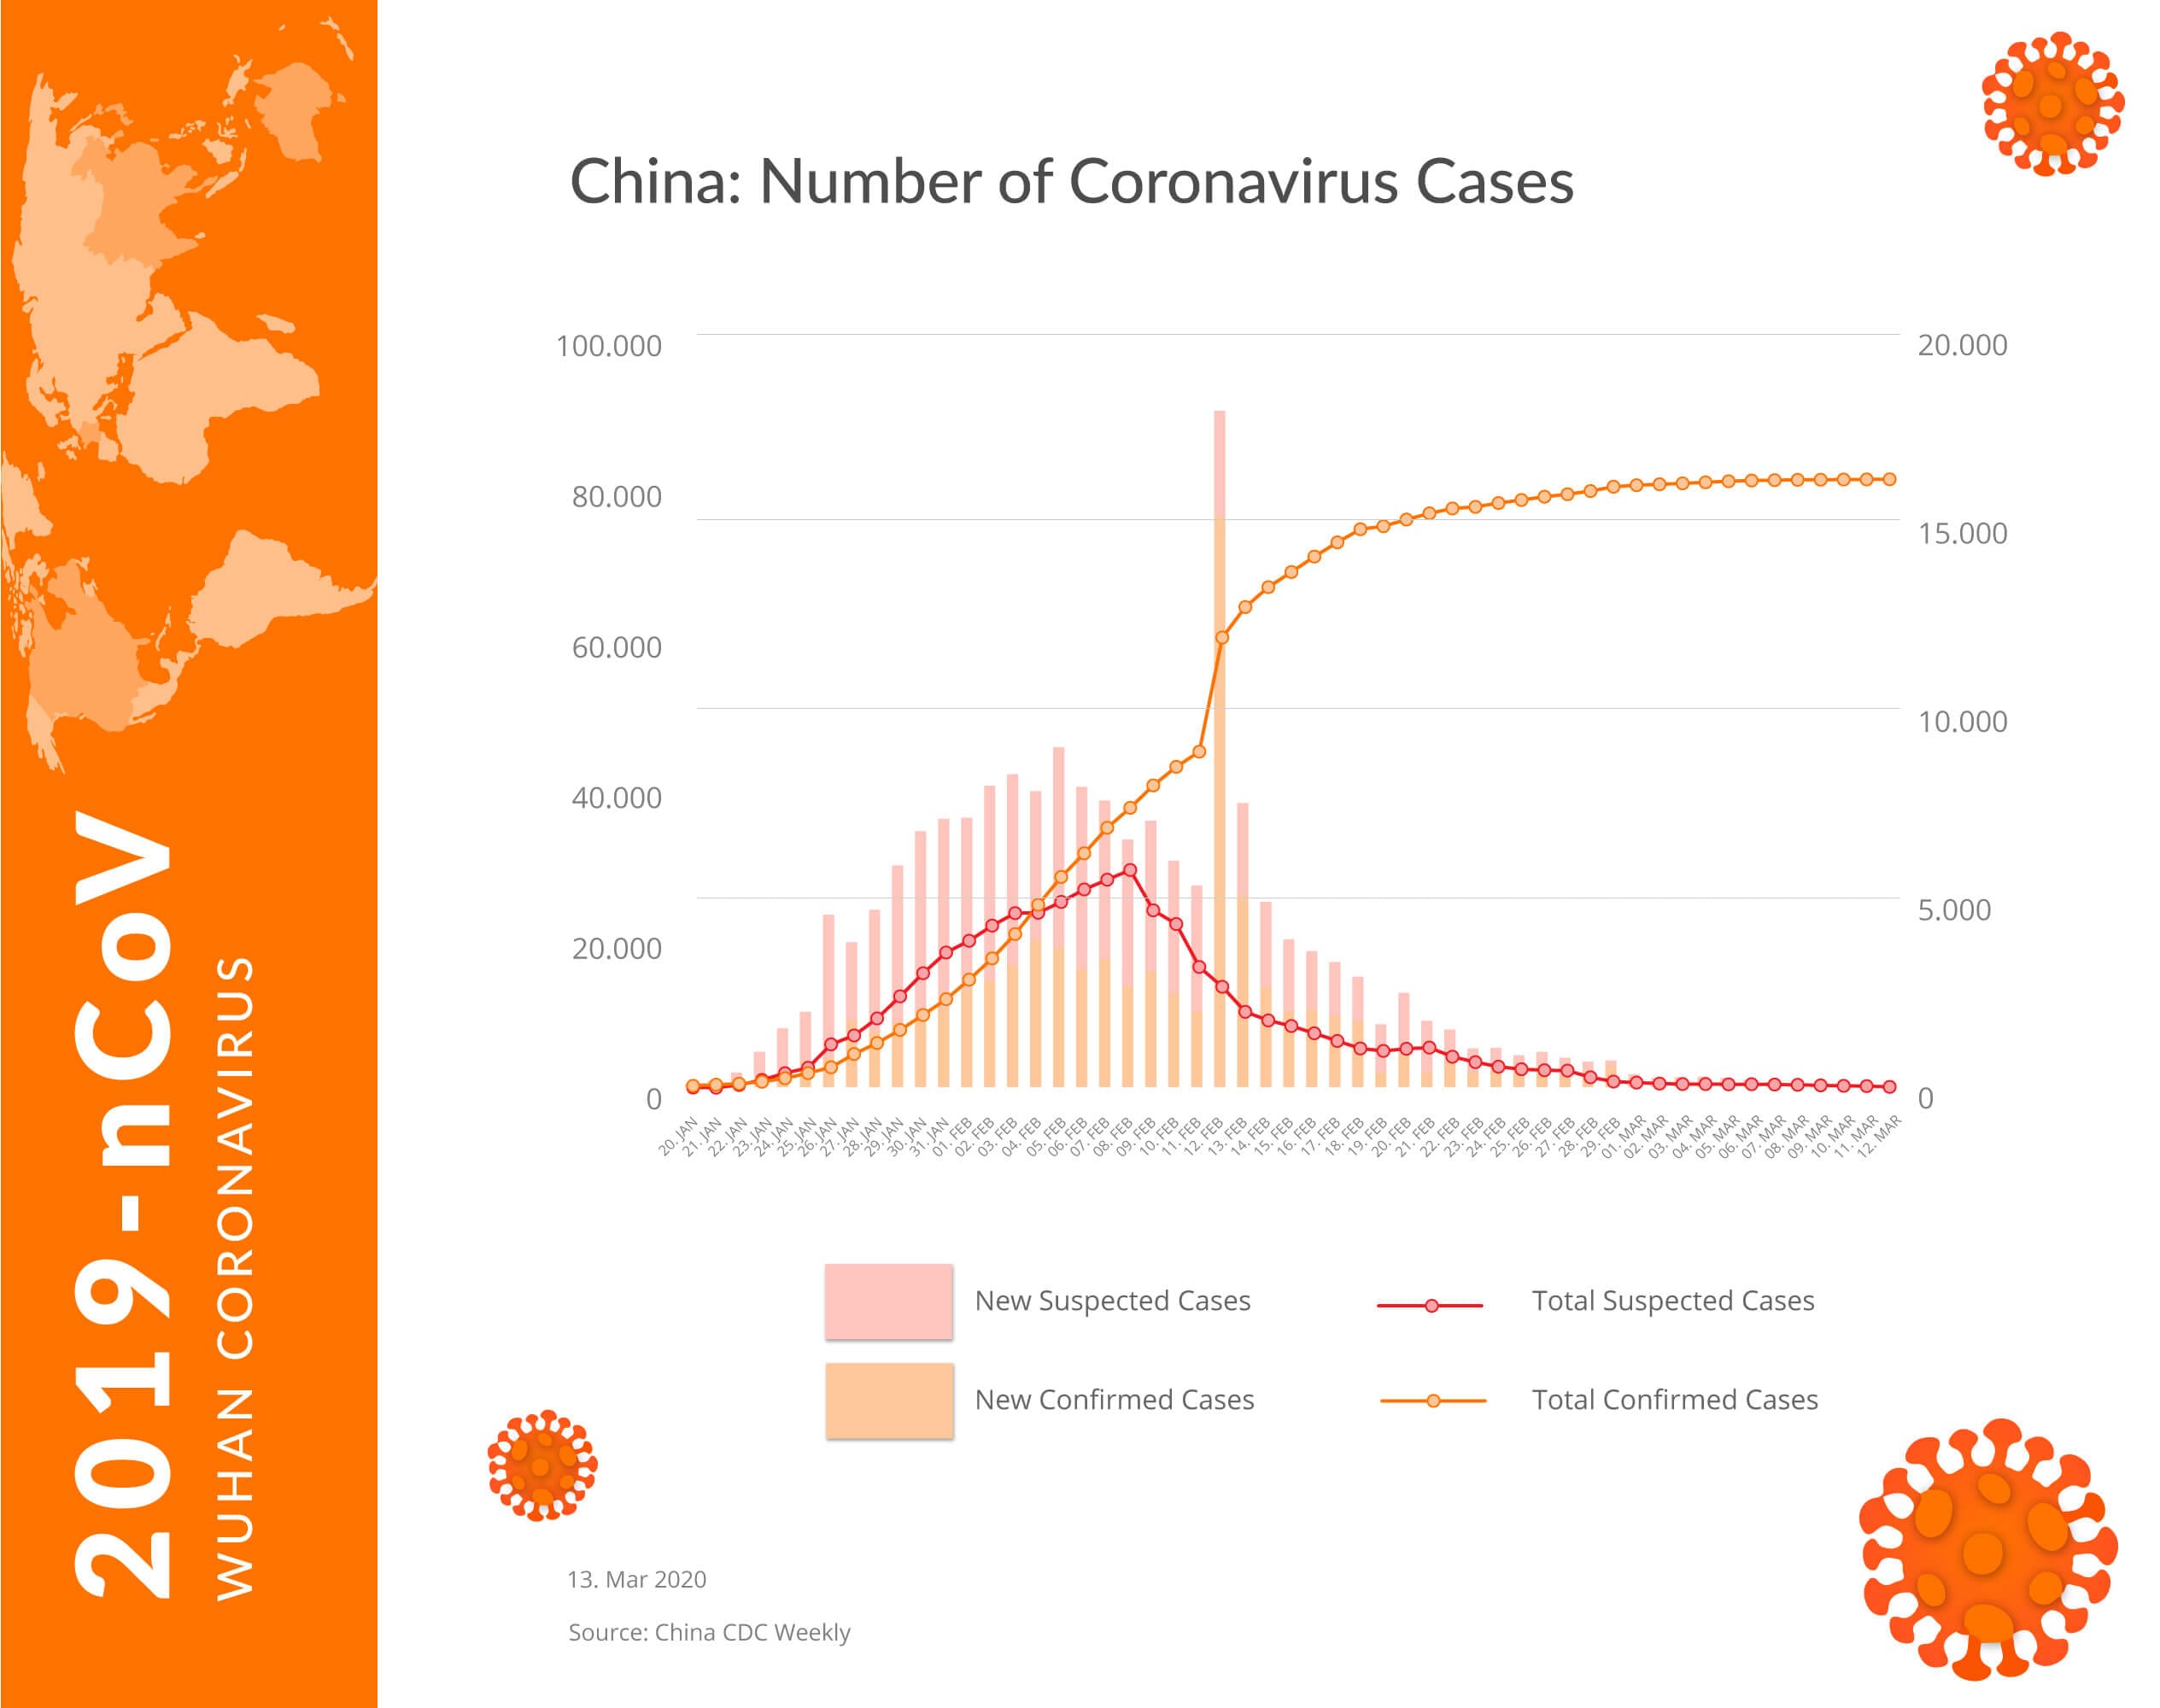 Number of Coronavirus Cases in China 13032020